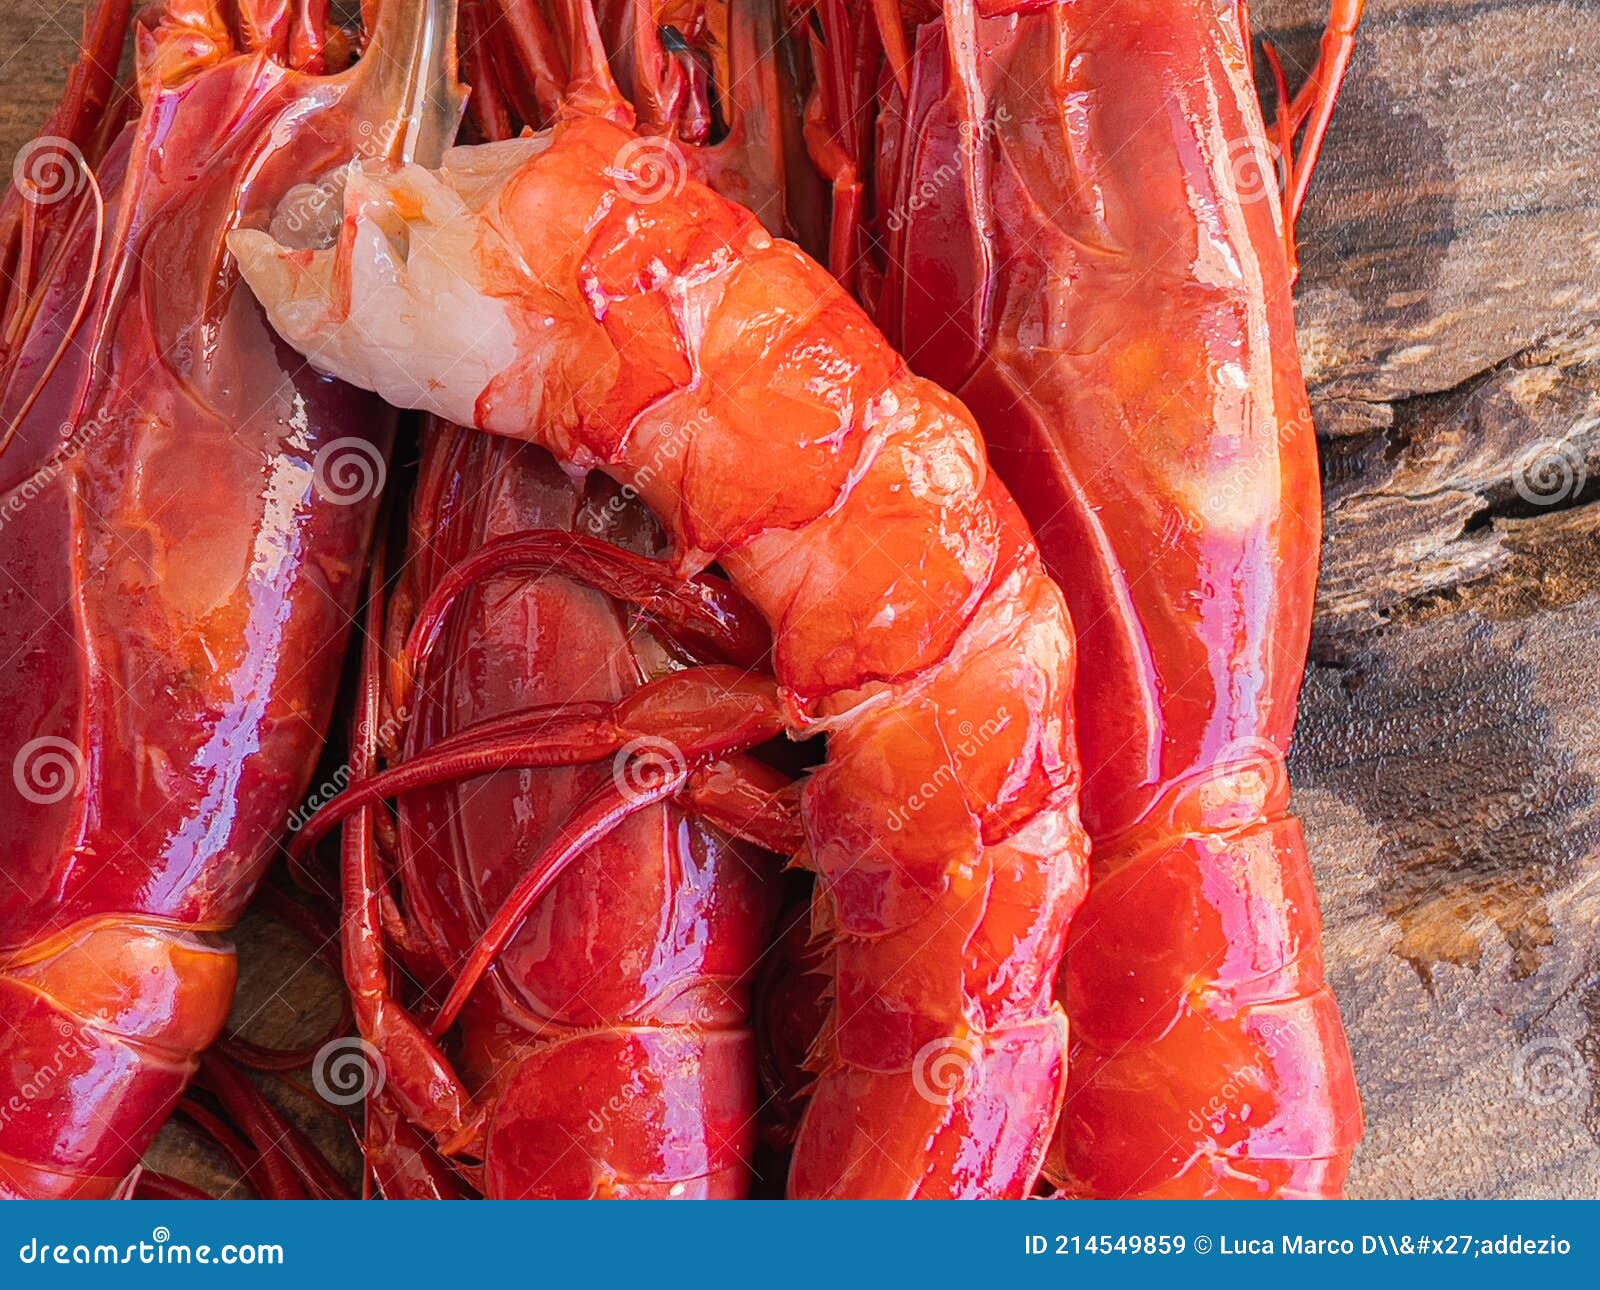 Indlejre Tæller insekter tidligere Fresh Raw Giant Red Carabineros Prawns Stock Image - Image of prawn, shrimps:  214549859